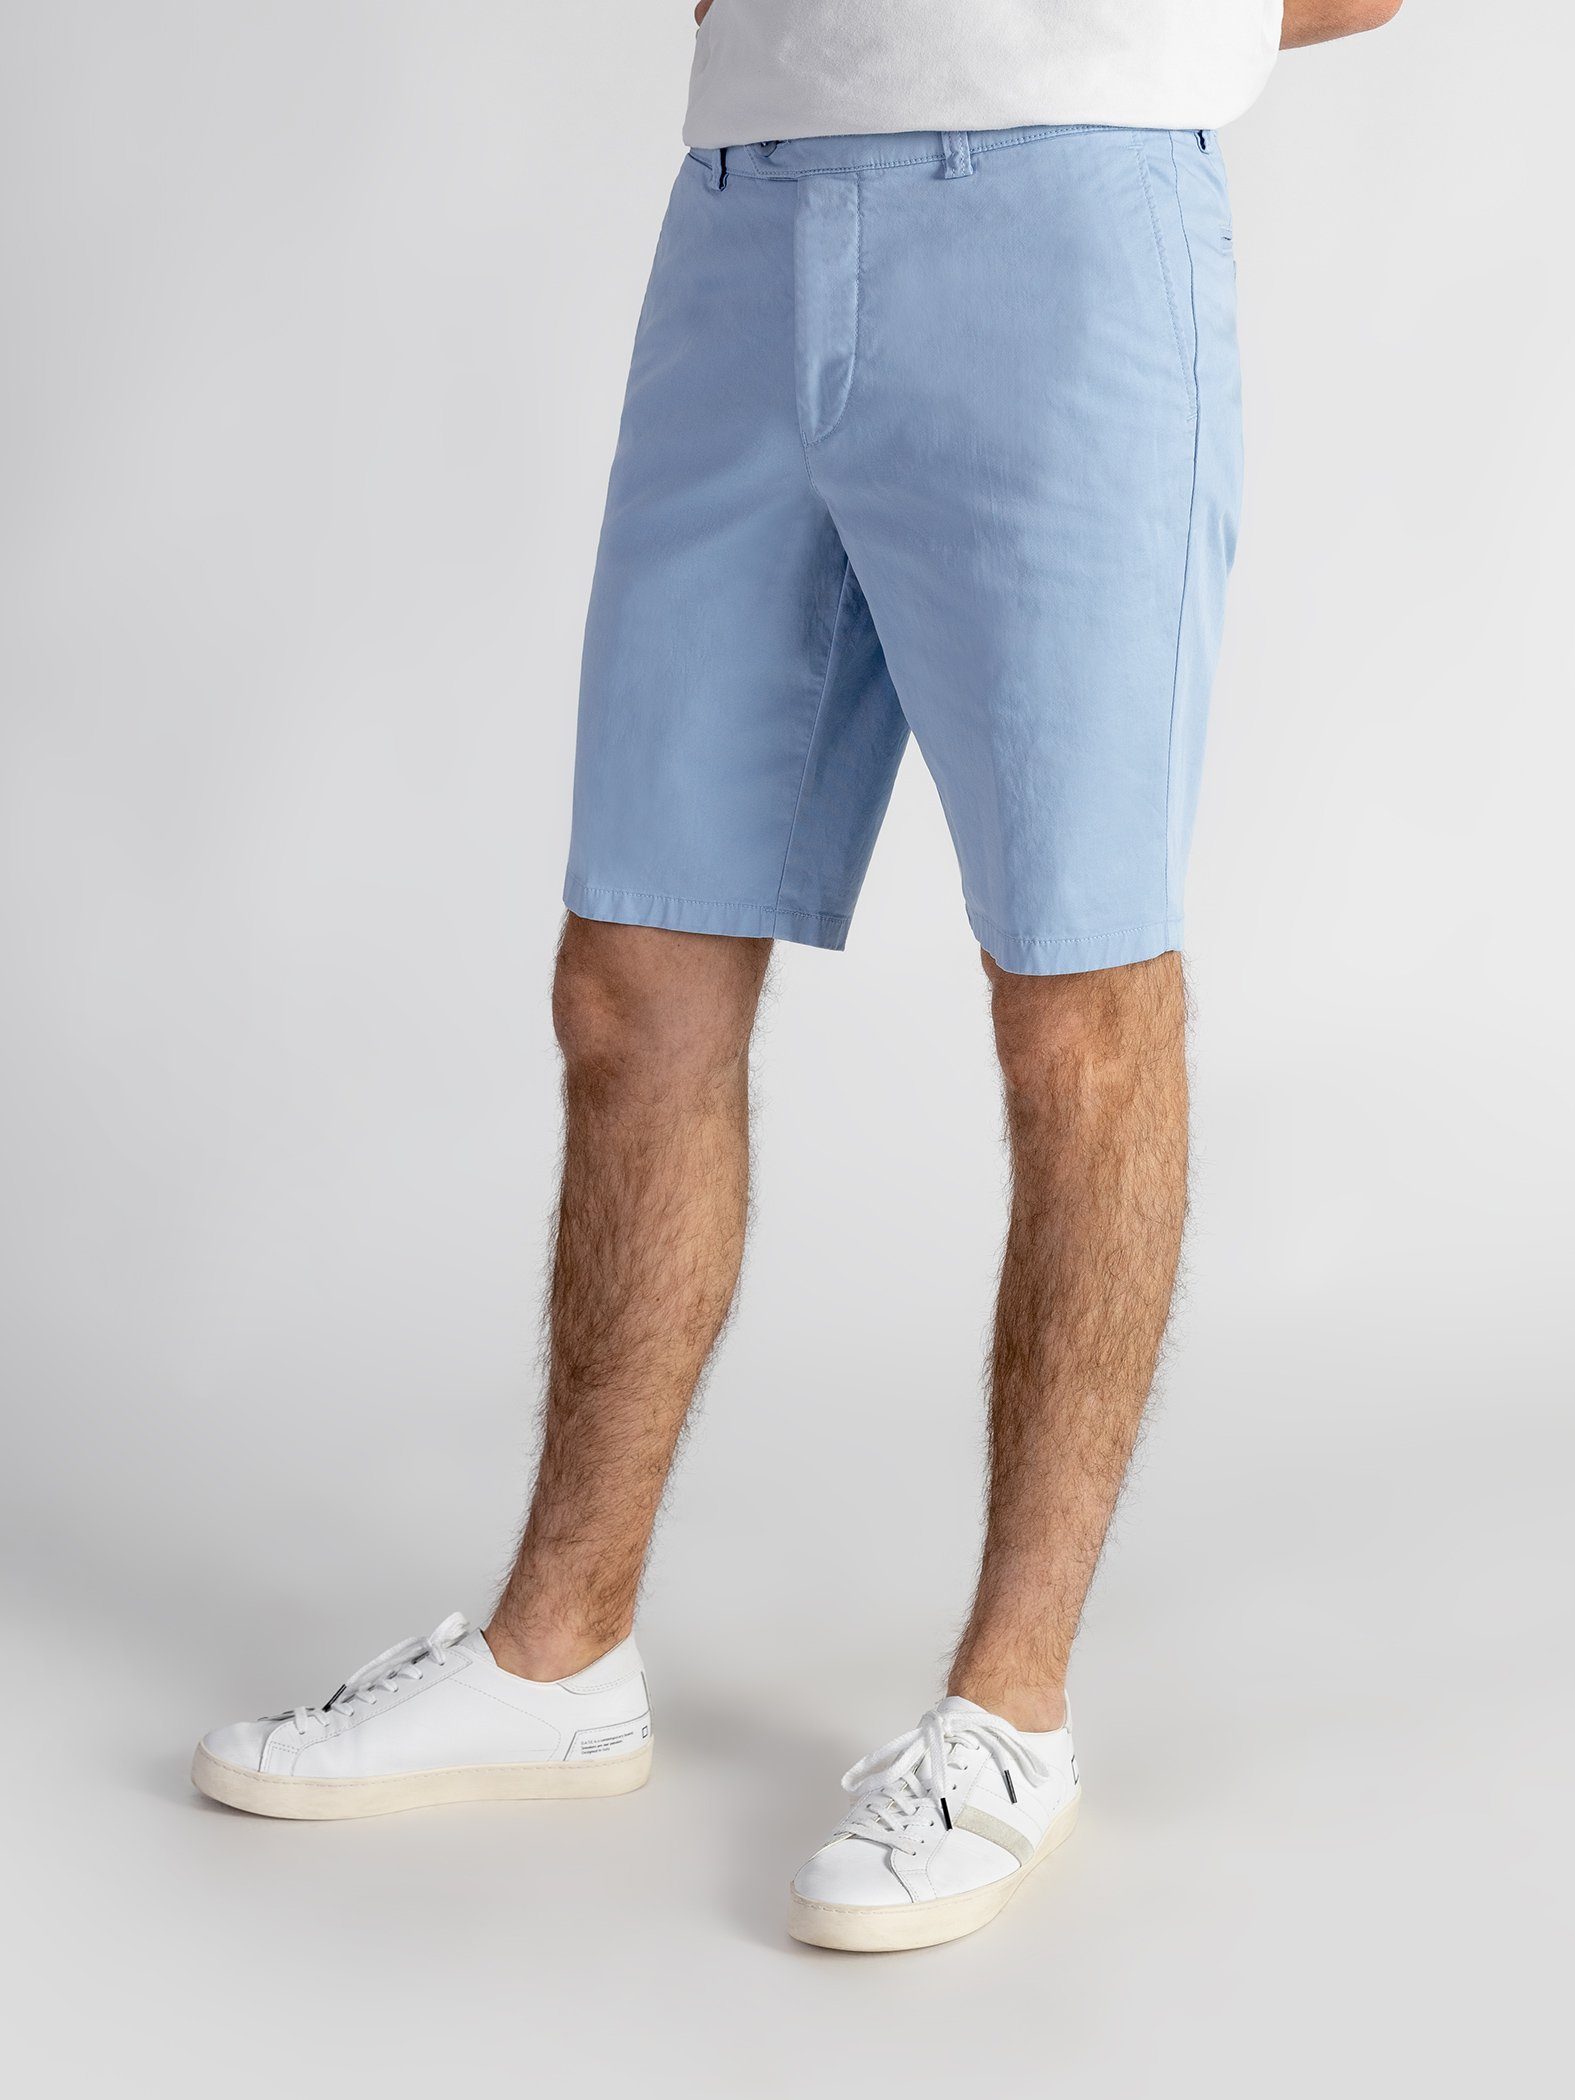 elastischem Farbauswahl, Bund, Shorts TwoMates hellblau GOTS-zertifiziert mit Shorts